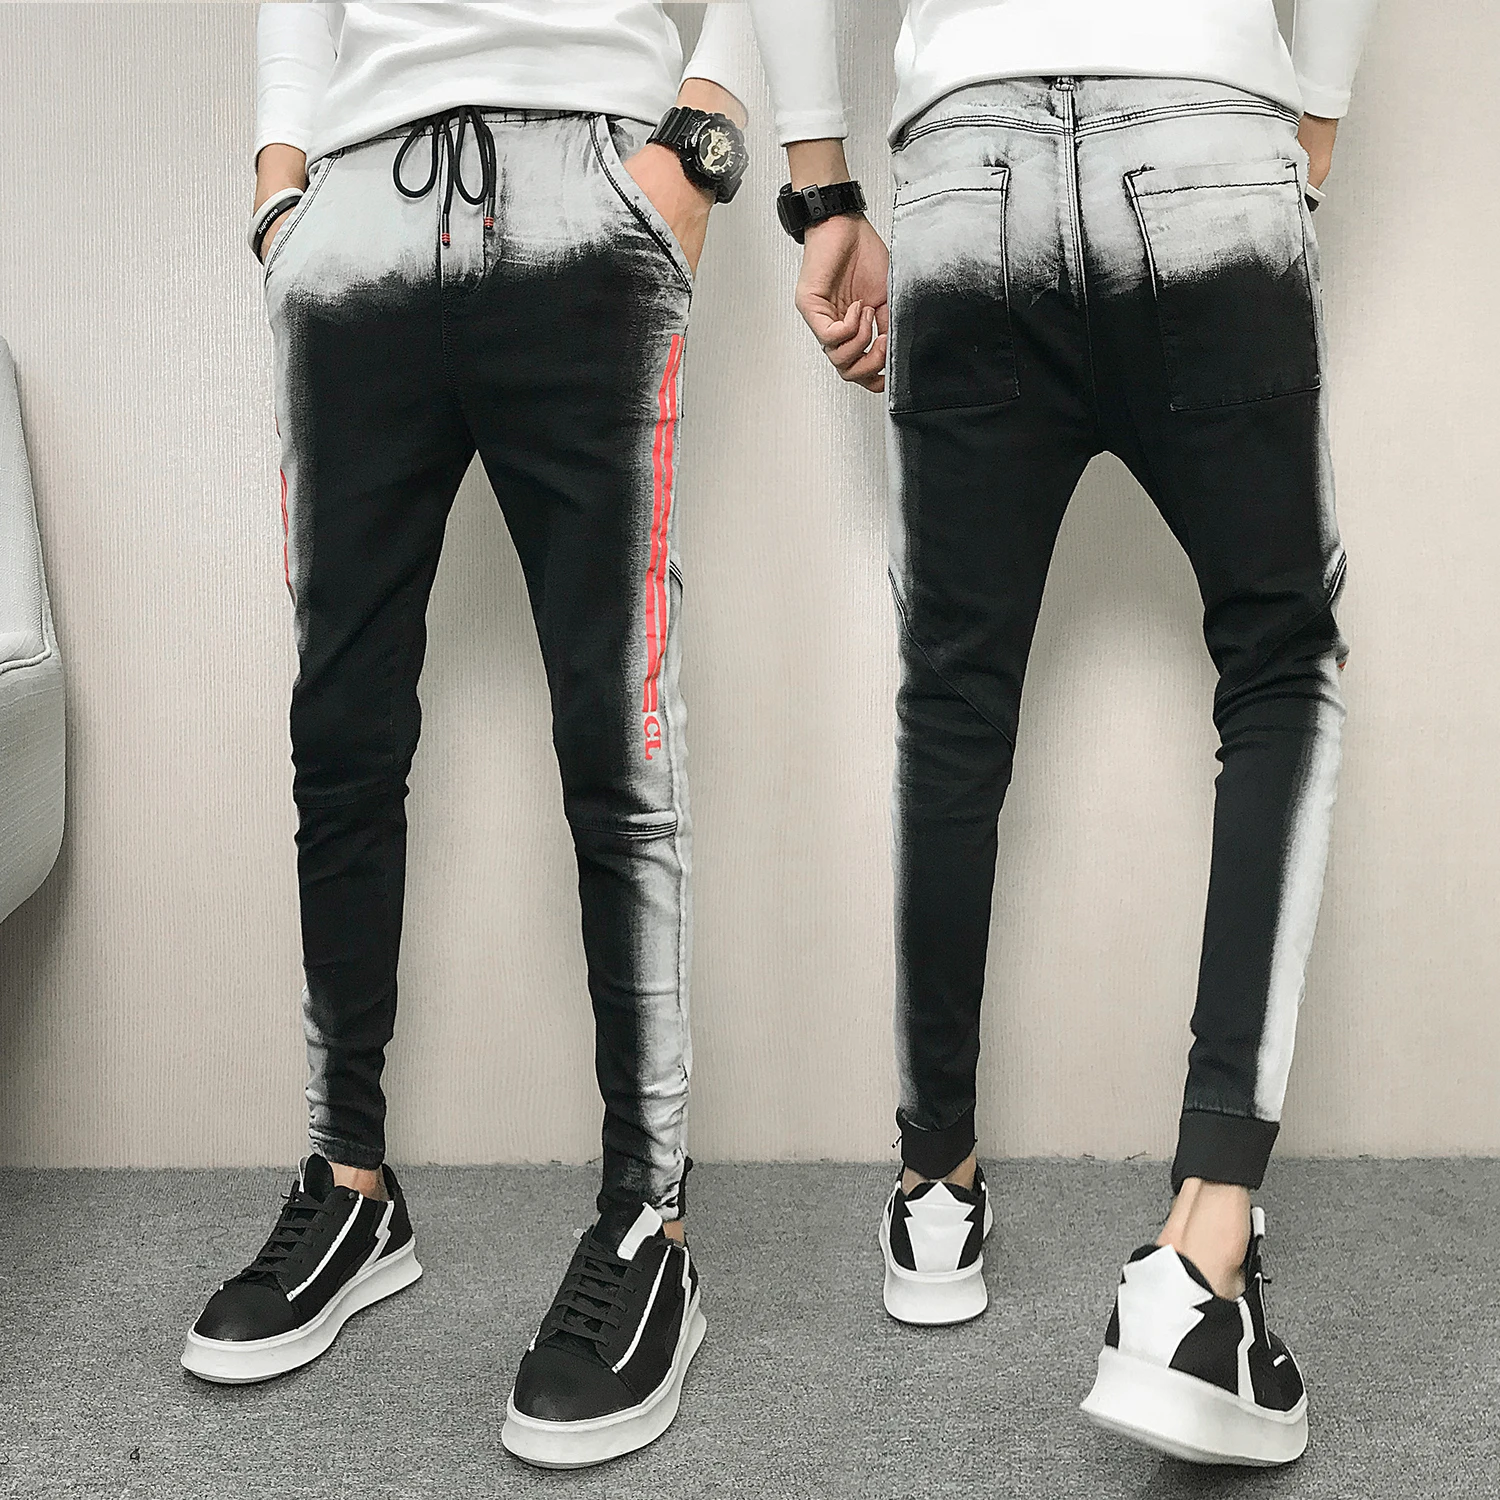 Мужские узкие джинсы брюки байкерские джинсы Модные джинсы зима 2018 мужские узкие джинсы прилив социальный парень